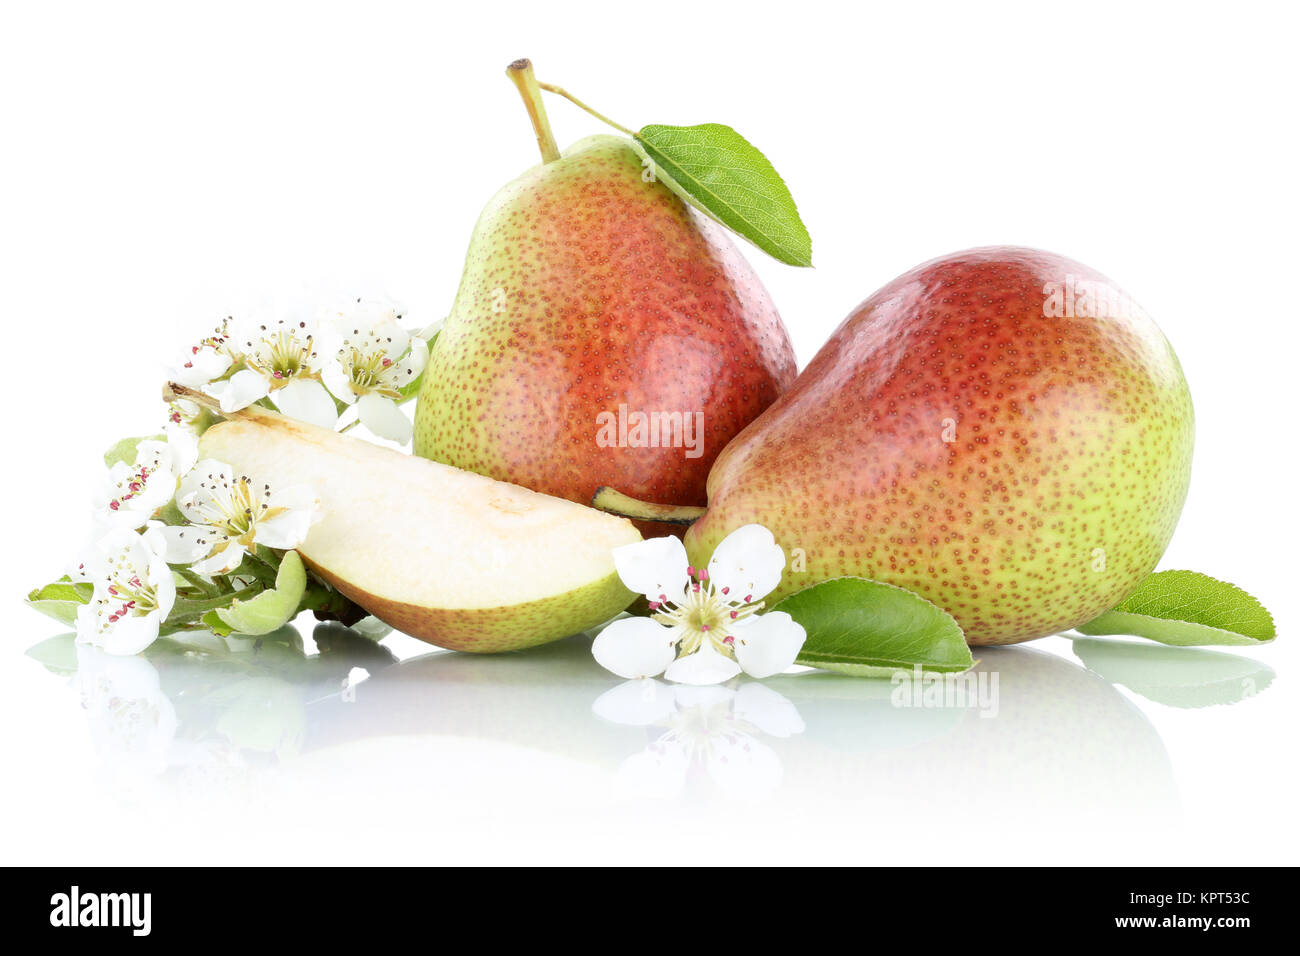 Birnen Birne Früchte Obst Freisteller freigestellt isoliert vor einem weissen Hintergrund Stock Photo